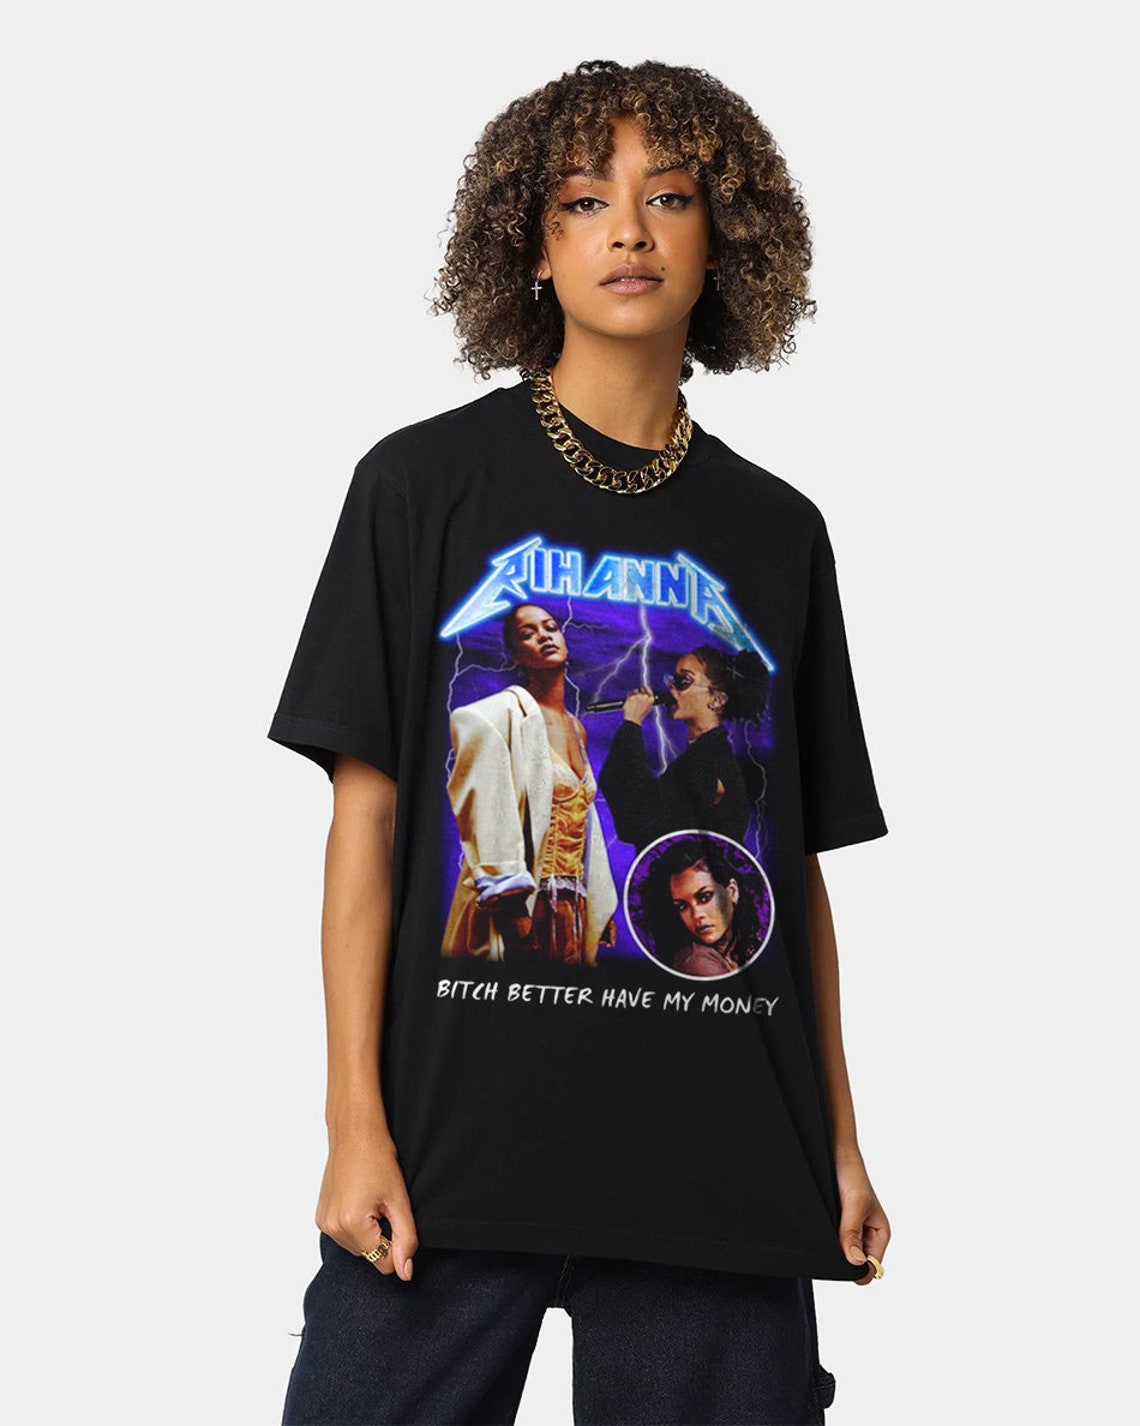 Rihanna Shirt Rihanna Graphic tee Vintage Rihanna Heavy | Etsy